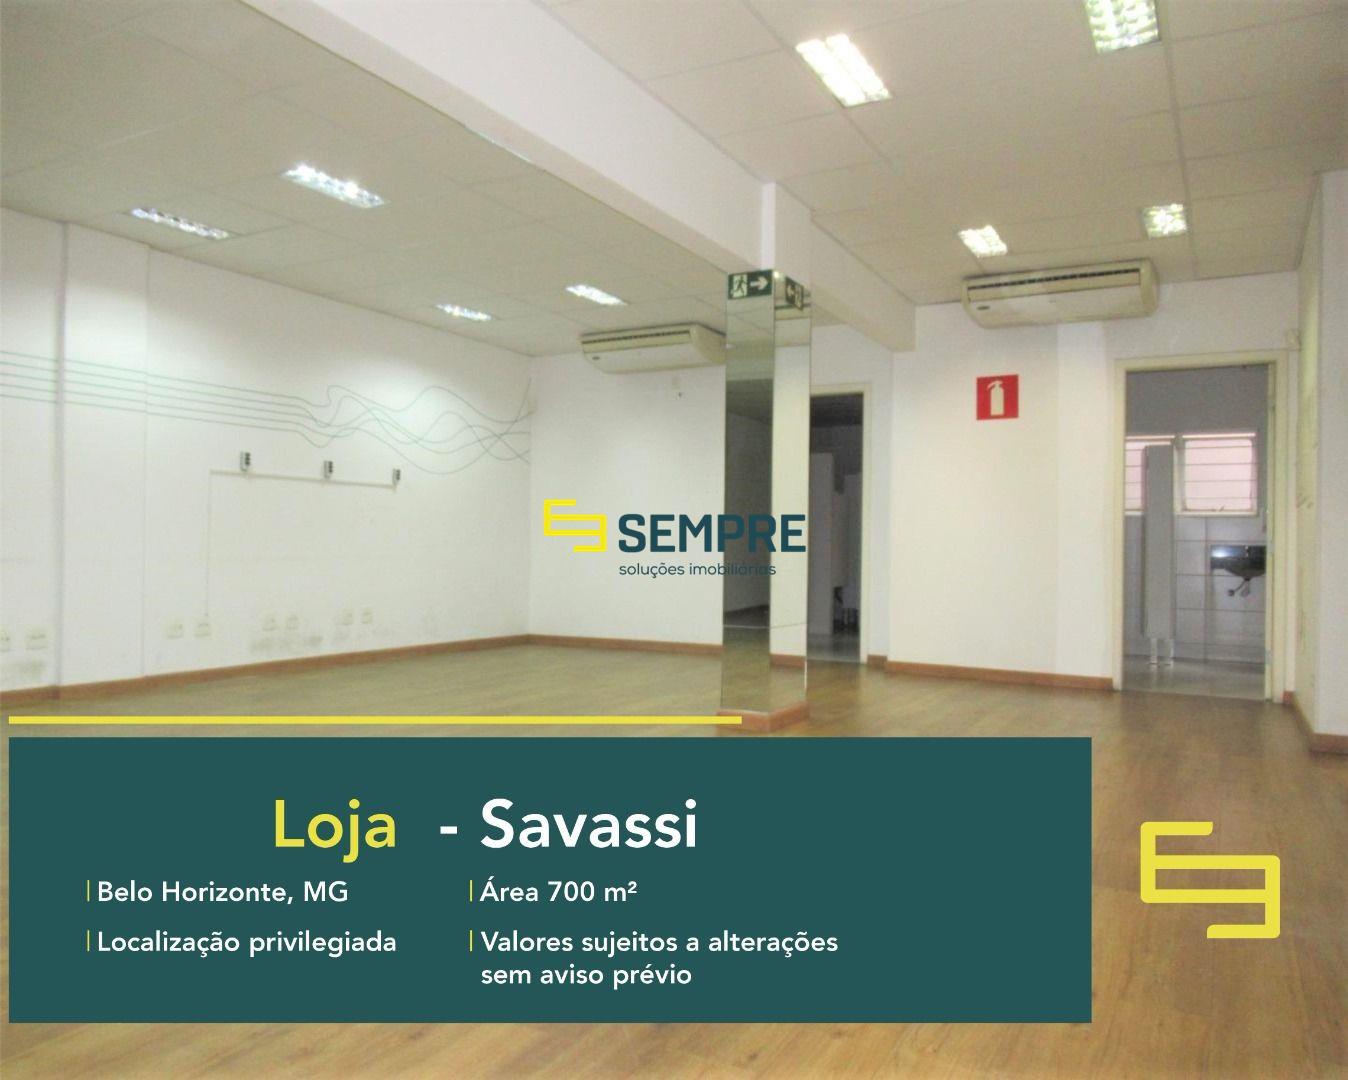 Loja na Savassi para alugar em Belo Horizonte em excelente localização!. O estabelecimento comercial conta, sobretudo, com área de 540 m².